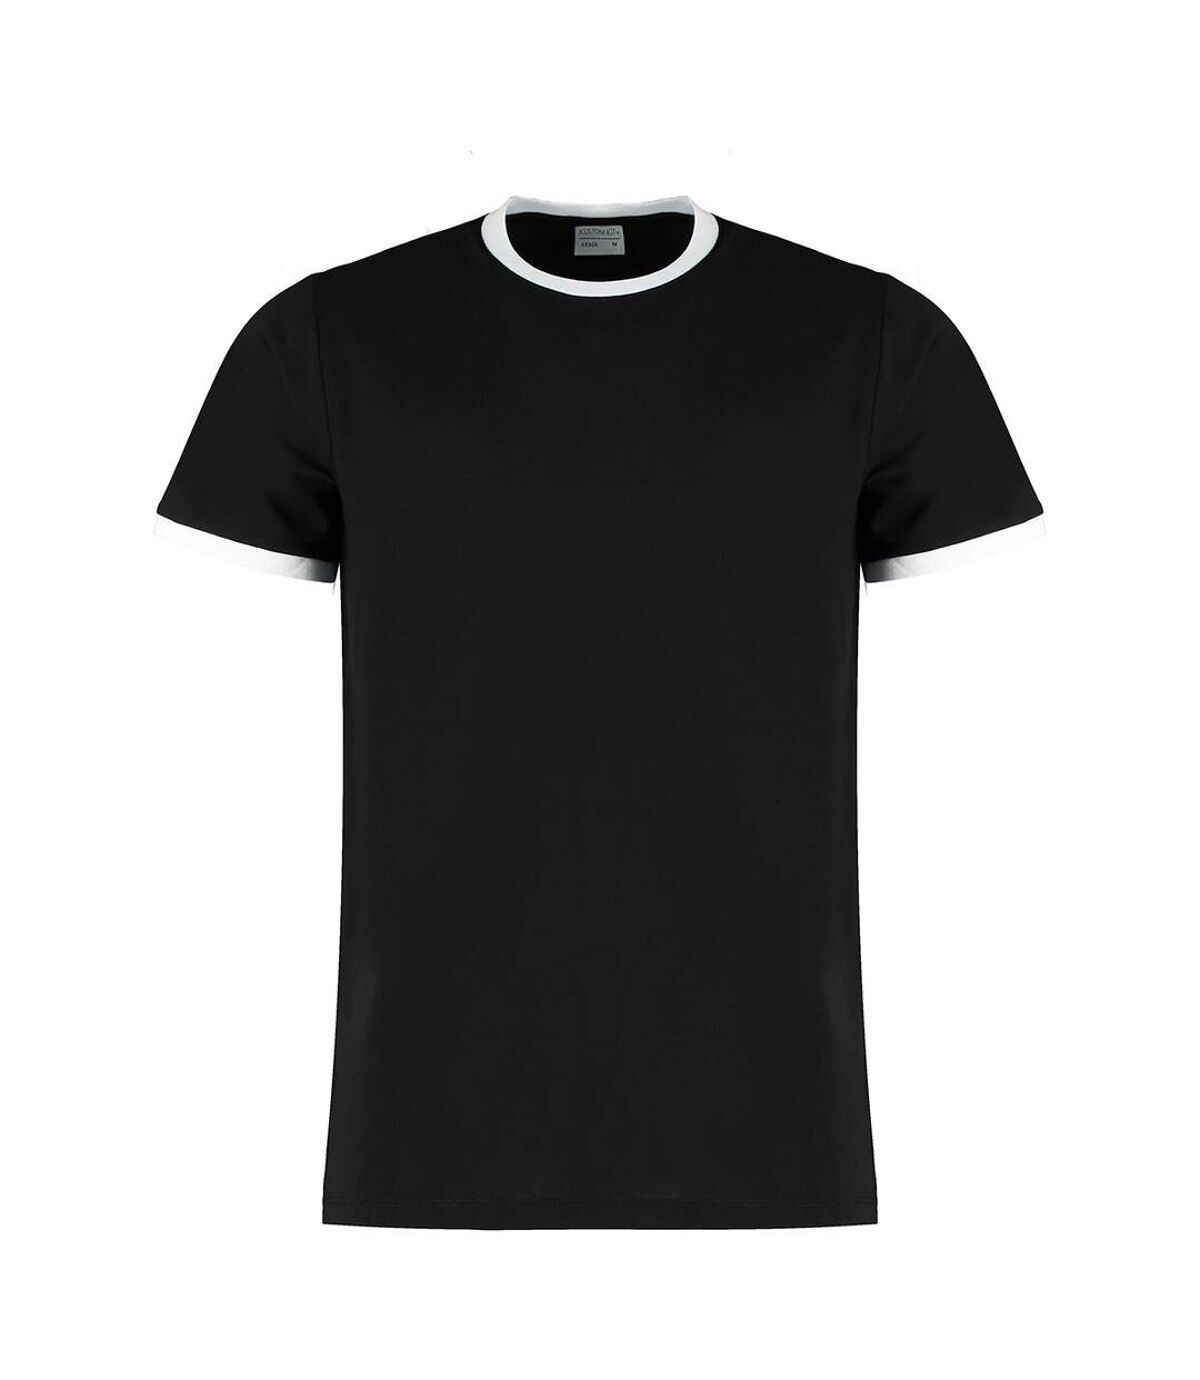 Kustom Kit - T-shirt RINGER - Homme (Noir / blanc) - UTBC4781